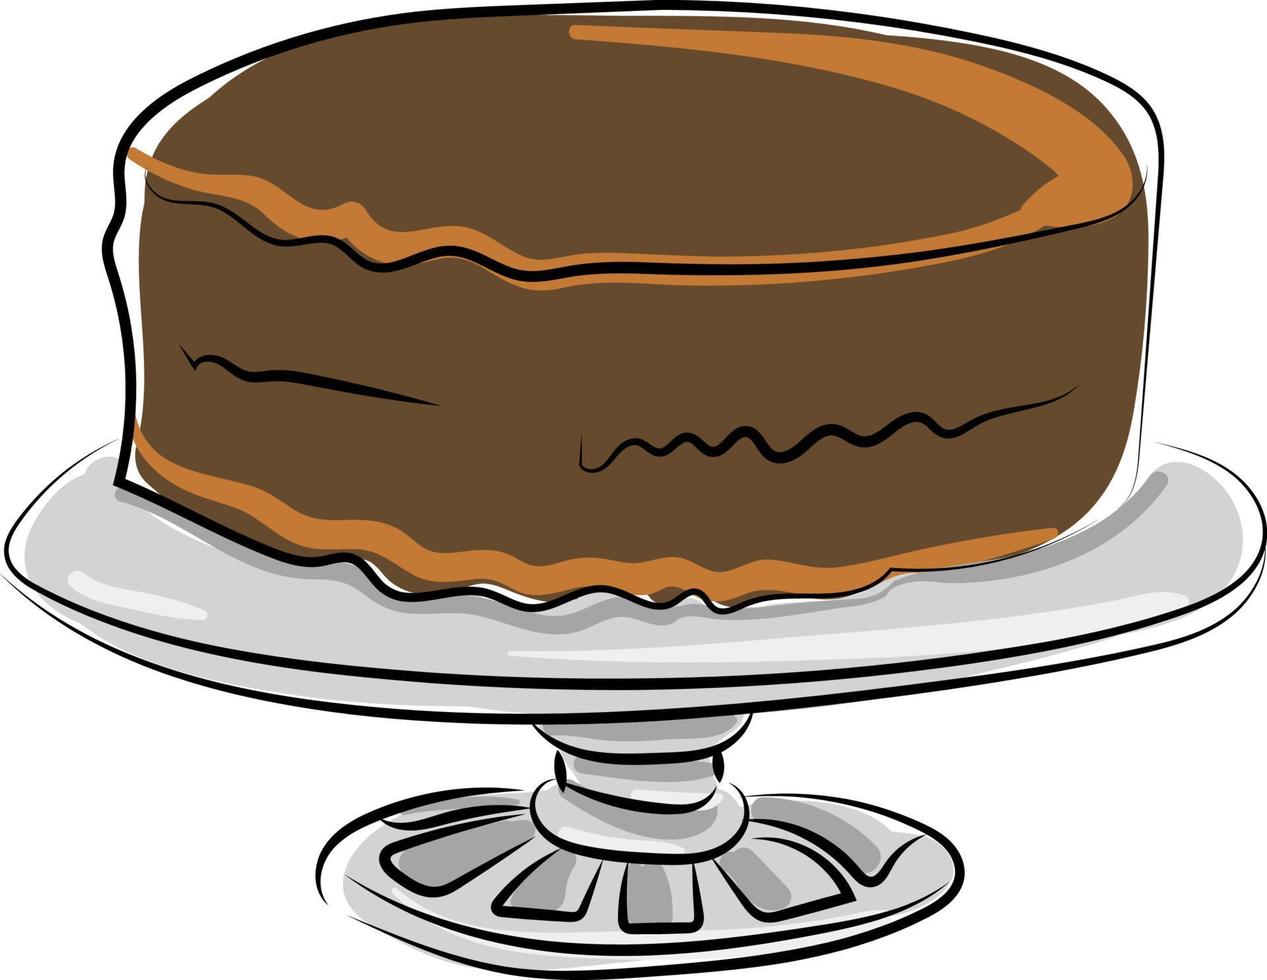 bolo de chocolate, ilustração, vetor em fundo branco.